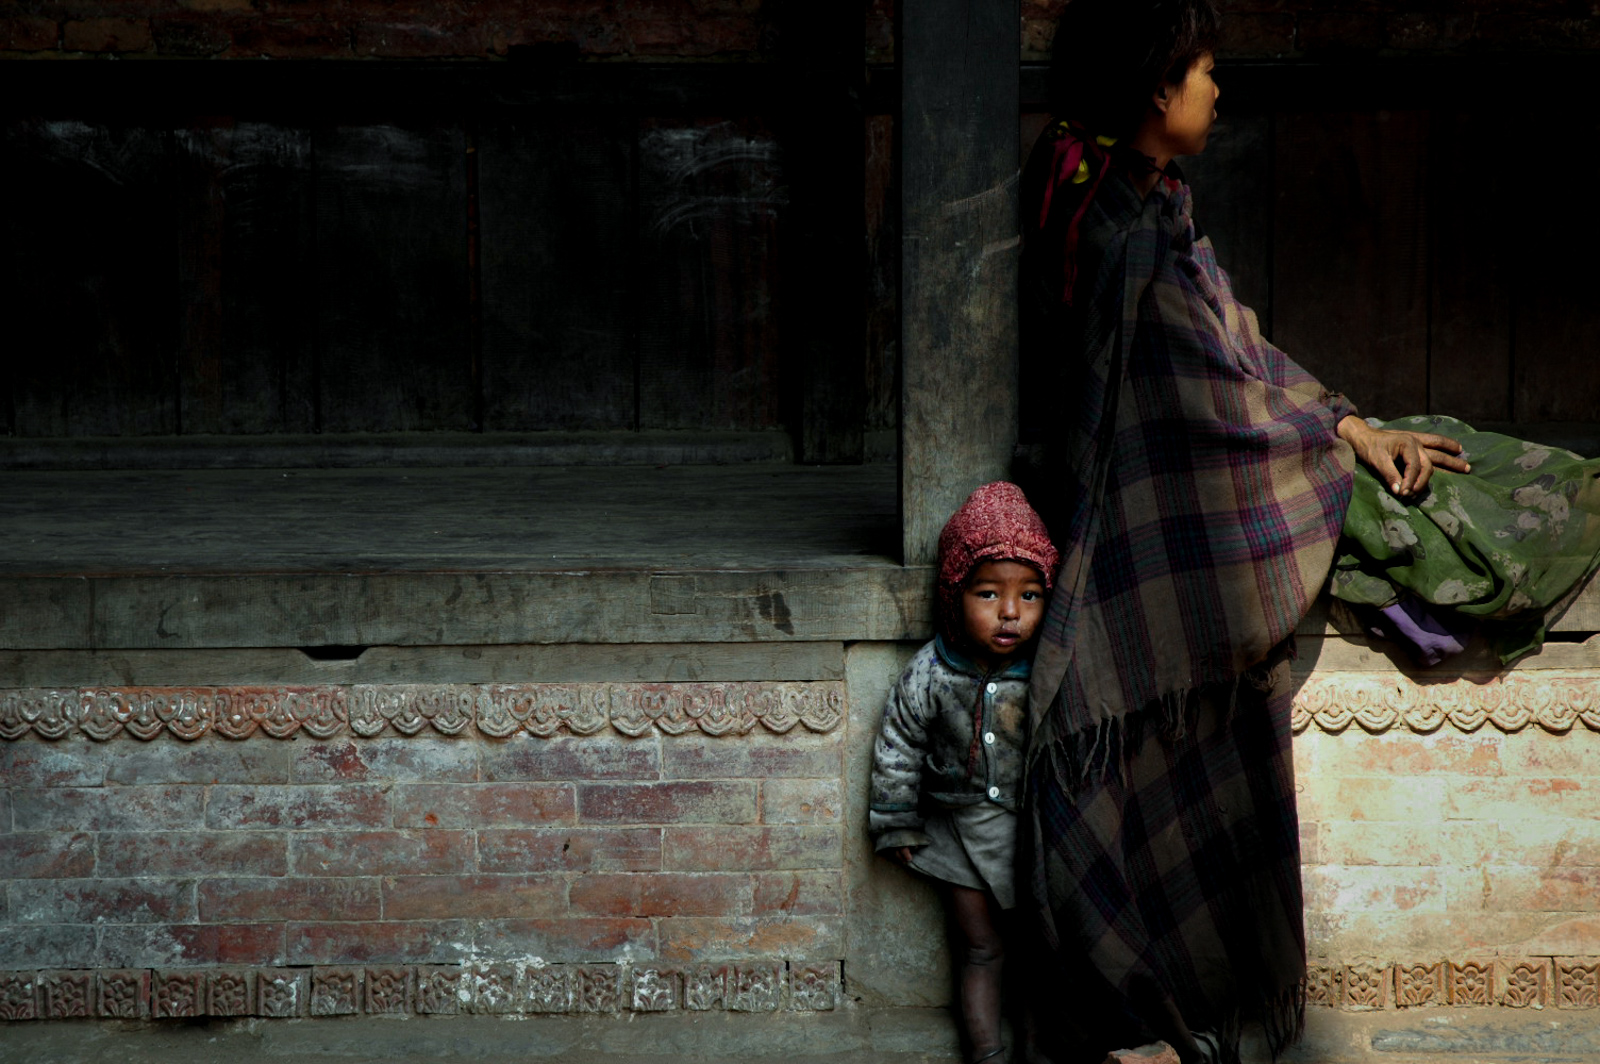  Baktapur, Nepal 2006 